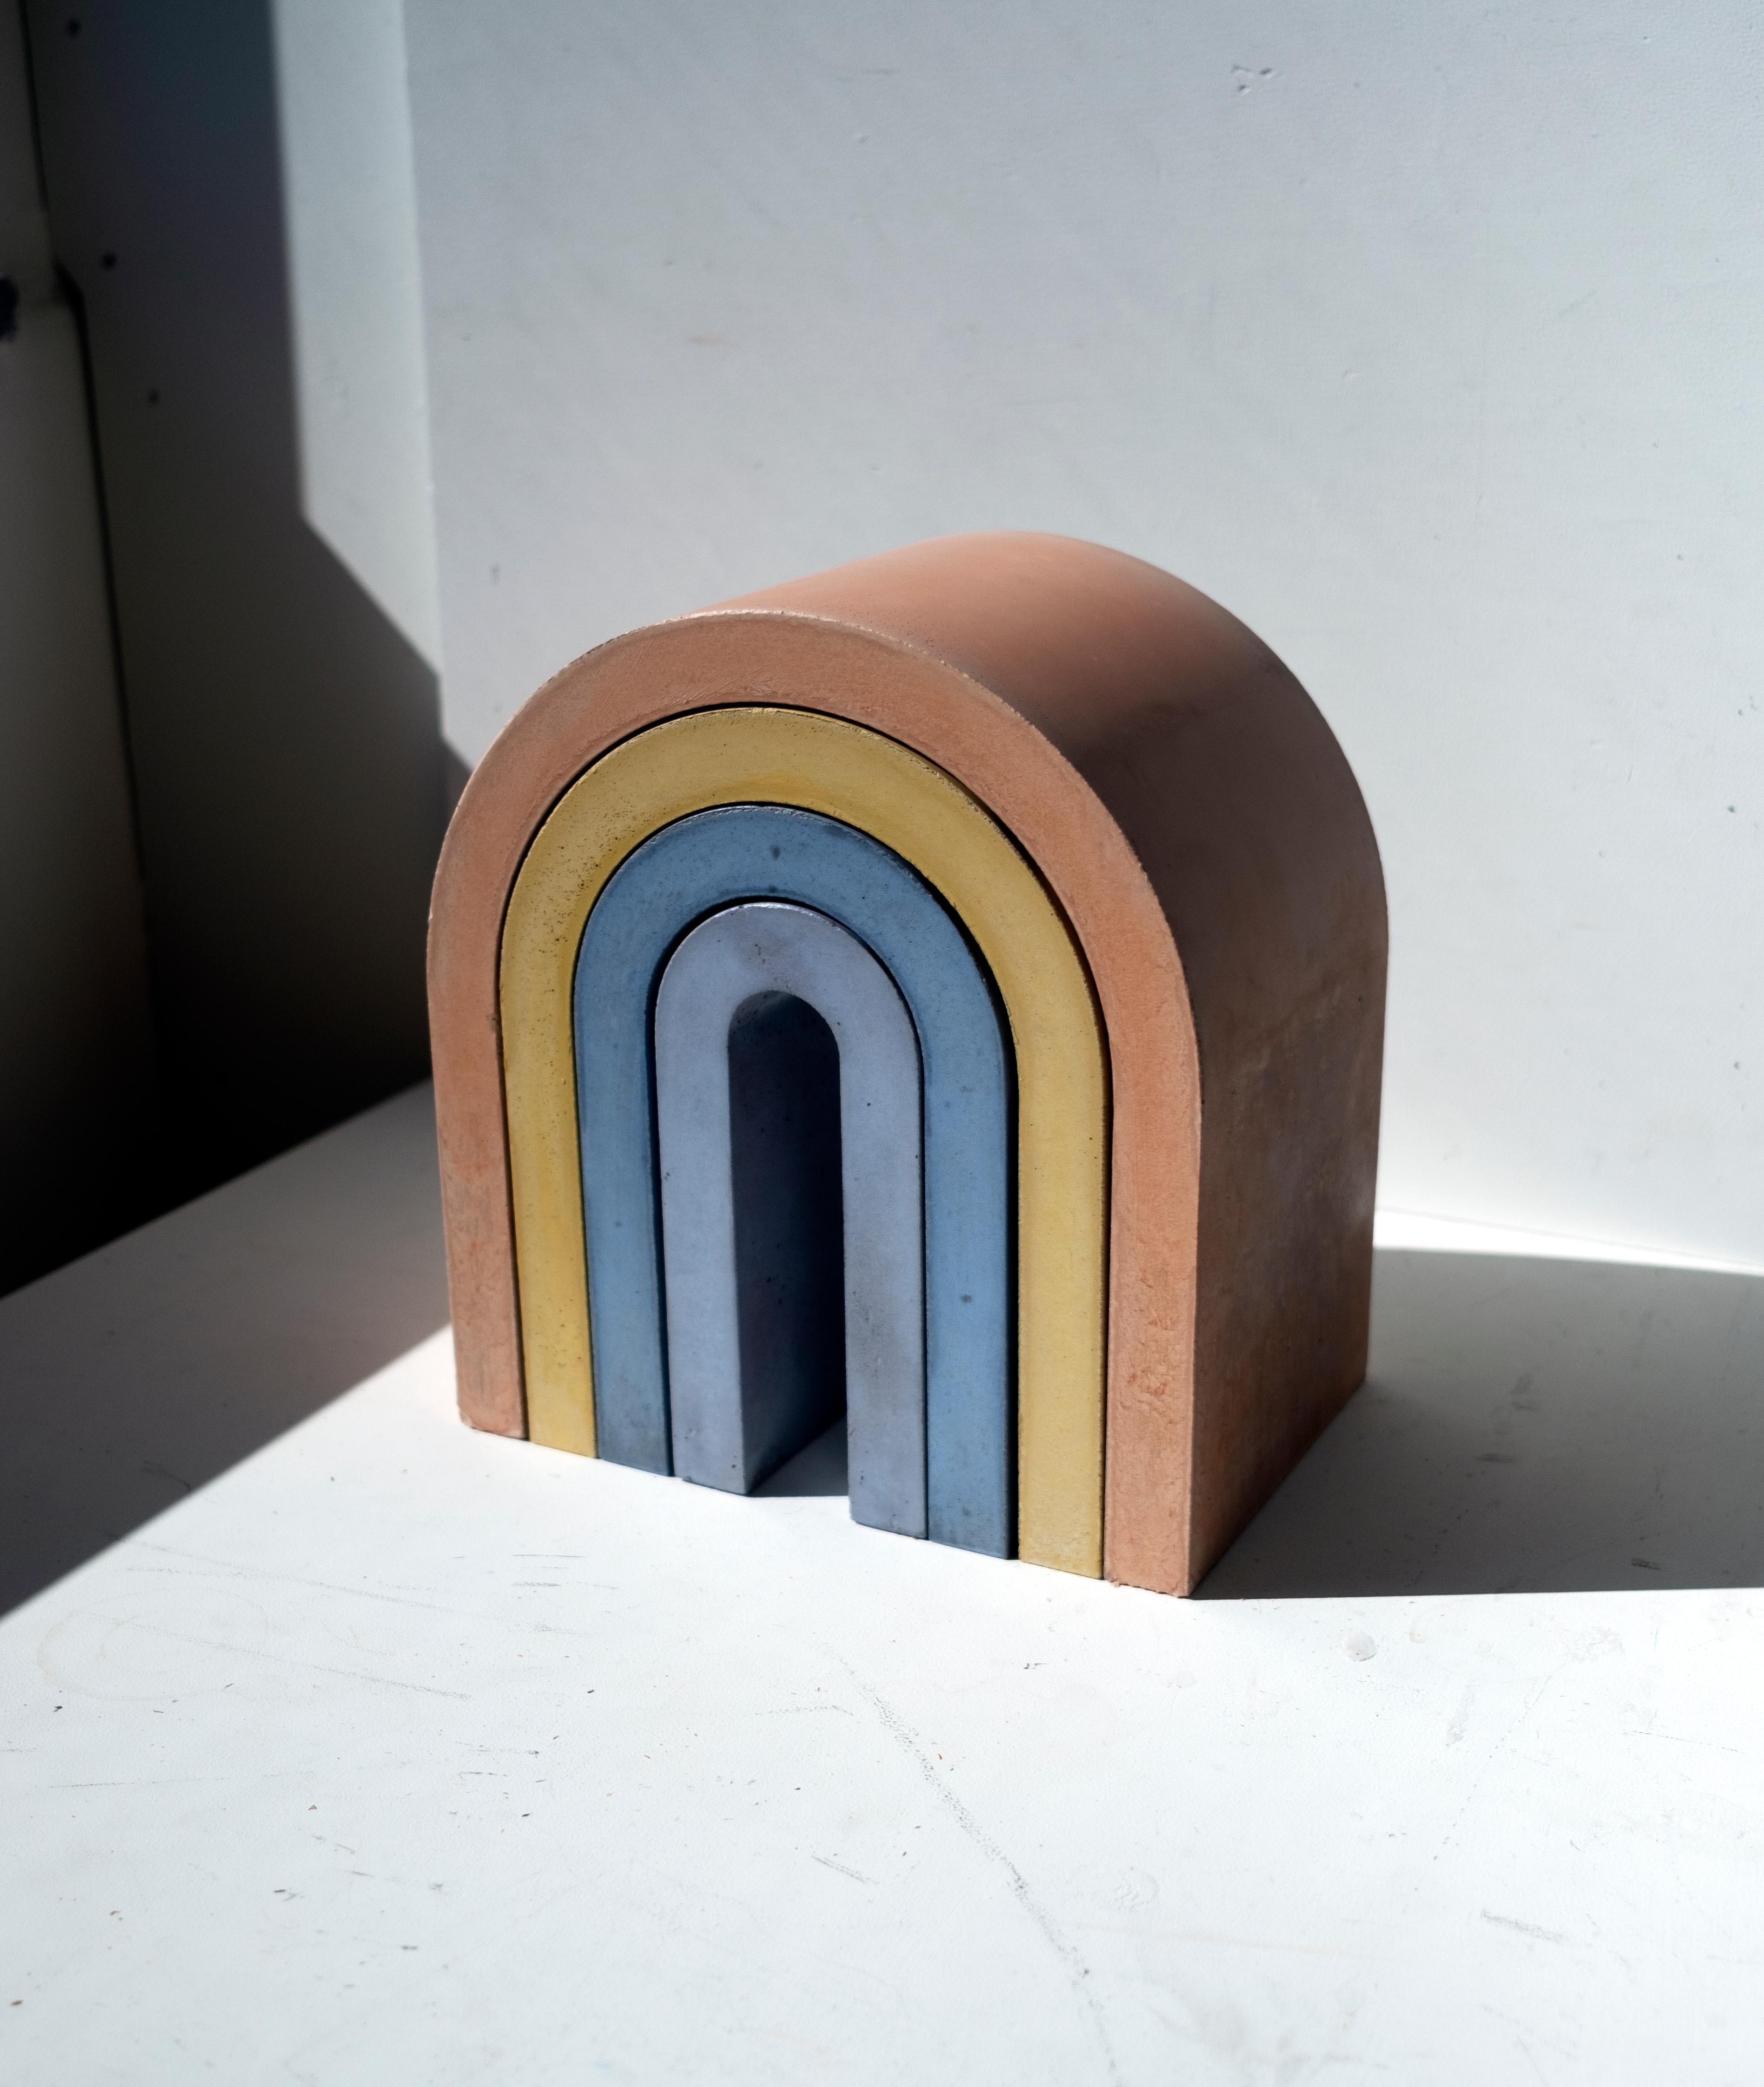 Regenbogen-Skulptur aus farbigem Beton in 4 Einzelteilen. Jedes Stück wird von erfahrenen Handwerkern aus Italien in hochwertigem Pastinakleber gegossen. Die Skulptur kann sowohl als einzelner Regenbogen als auch in Einzelteilen verwendet werden, um